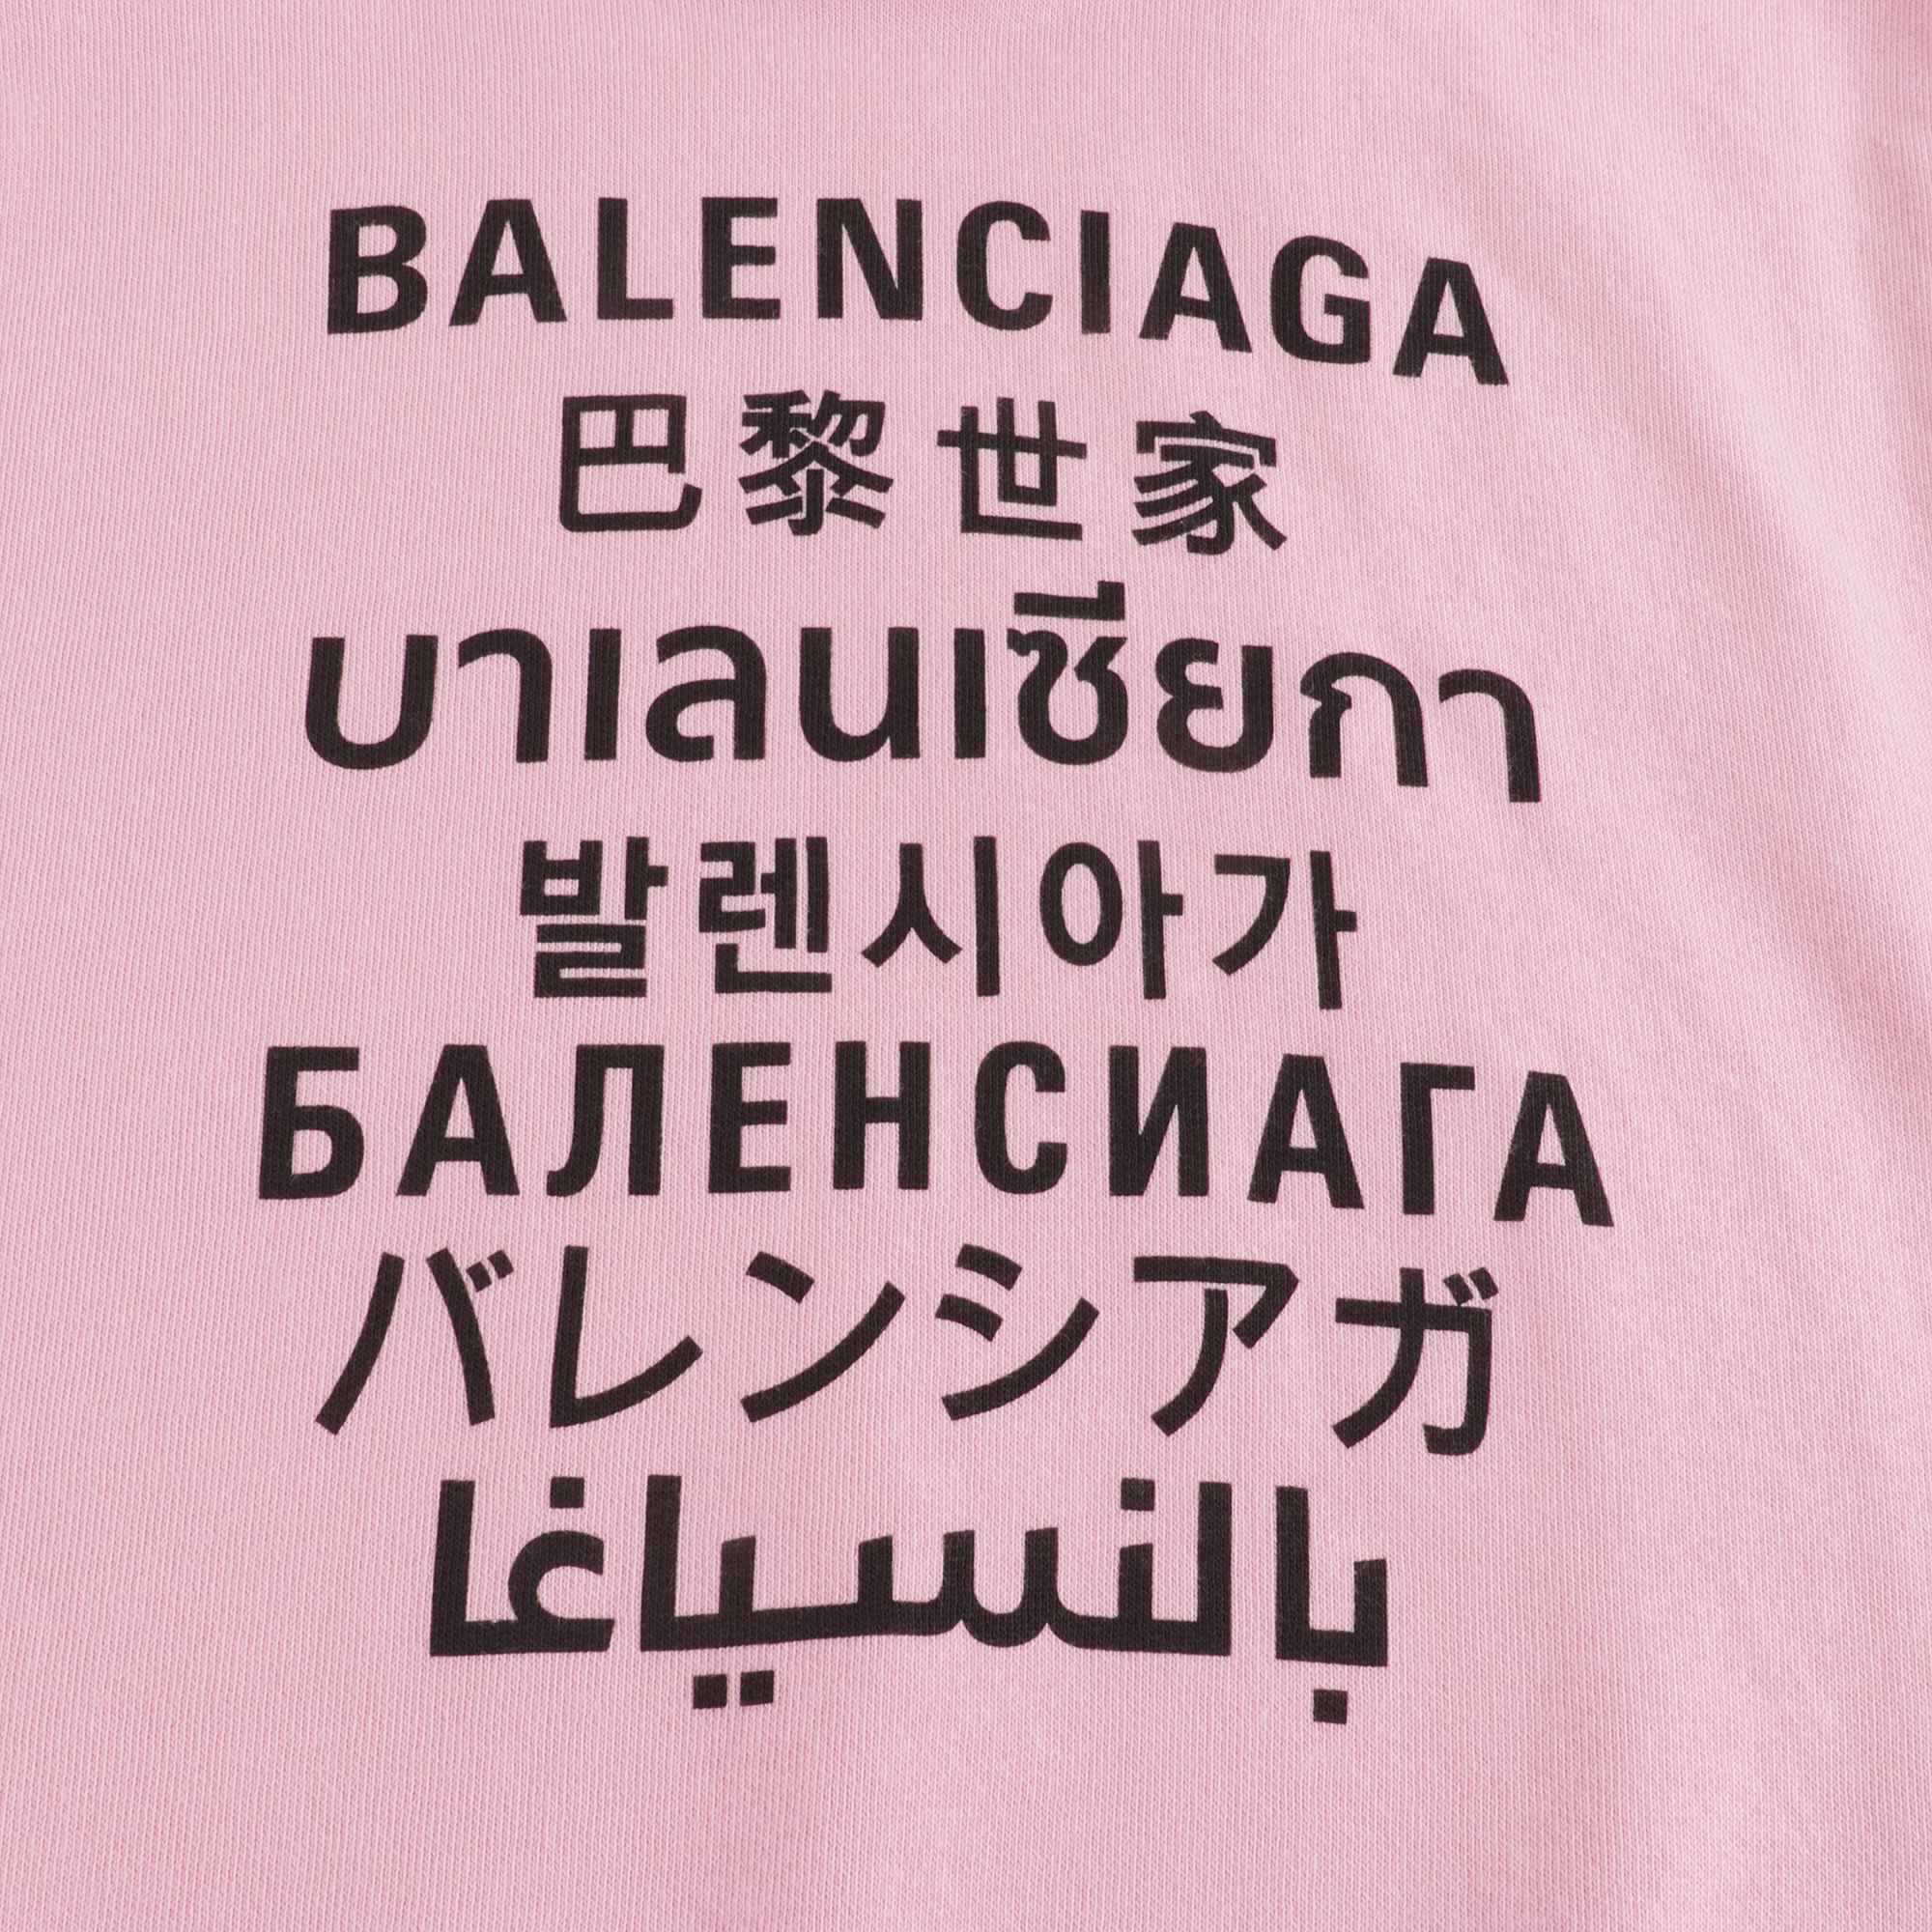 Boys & Girls Pink Languages Sweatshirt